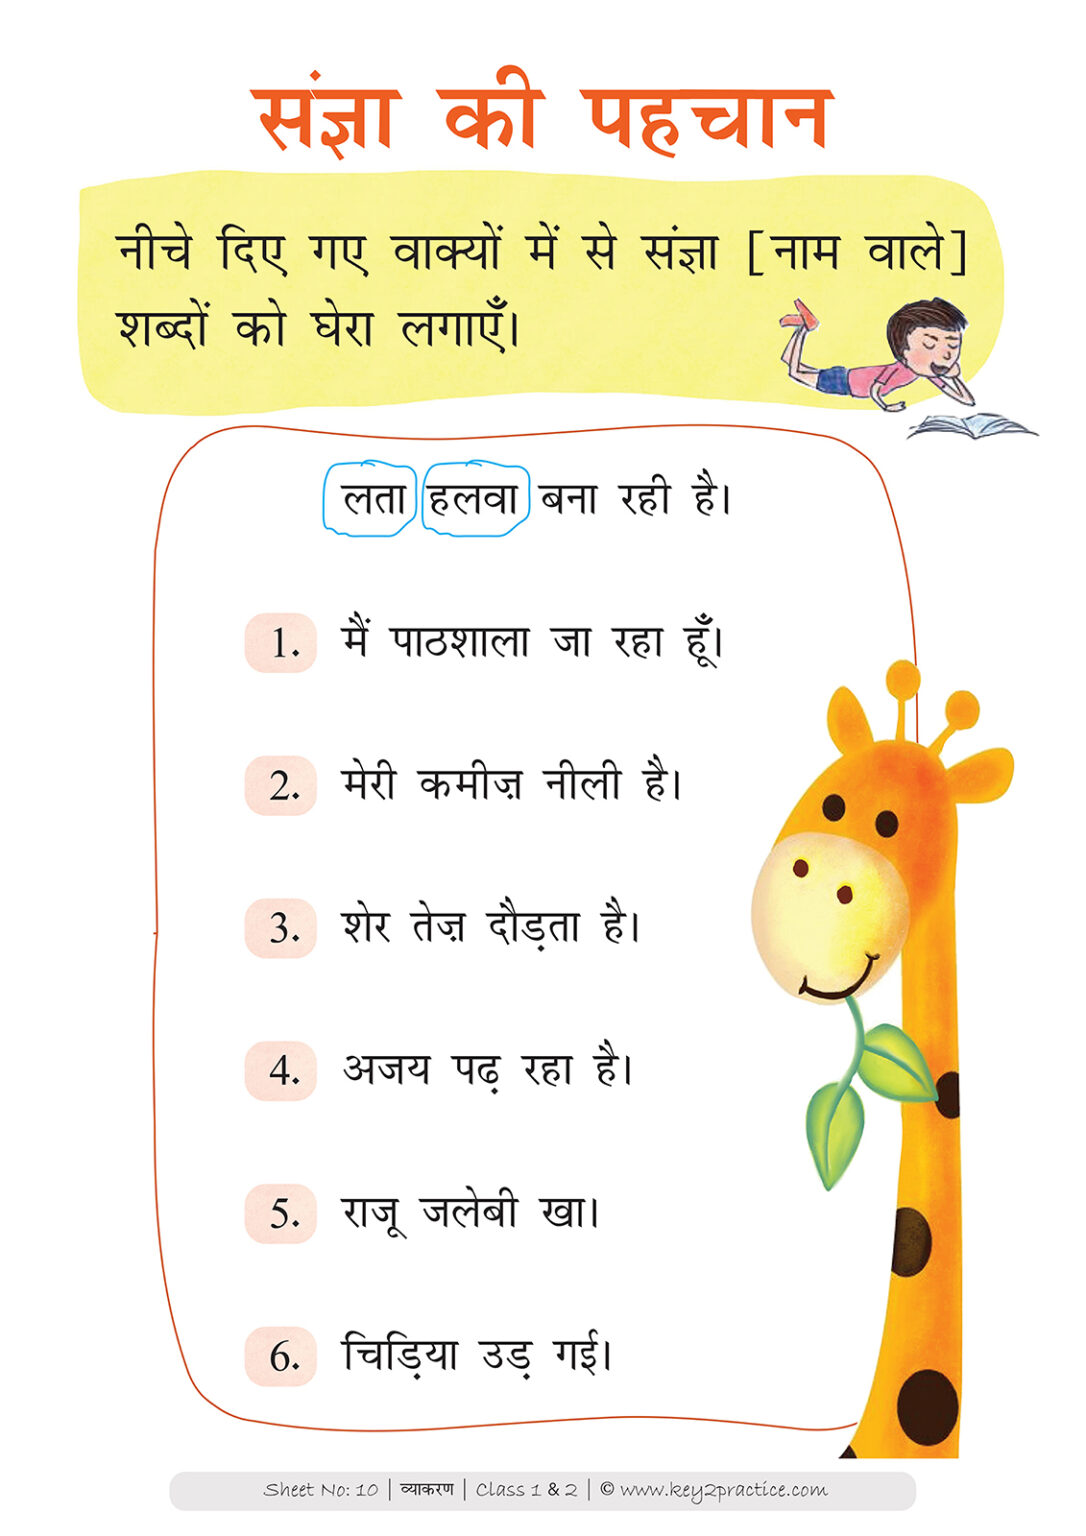 Class 1 & 2 Hindi Grammar worksheets I 4 workbooks - key2practice